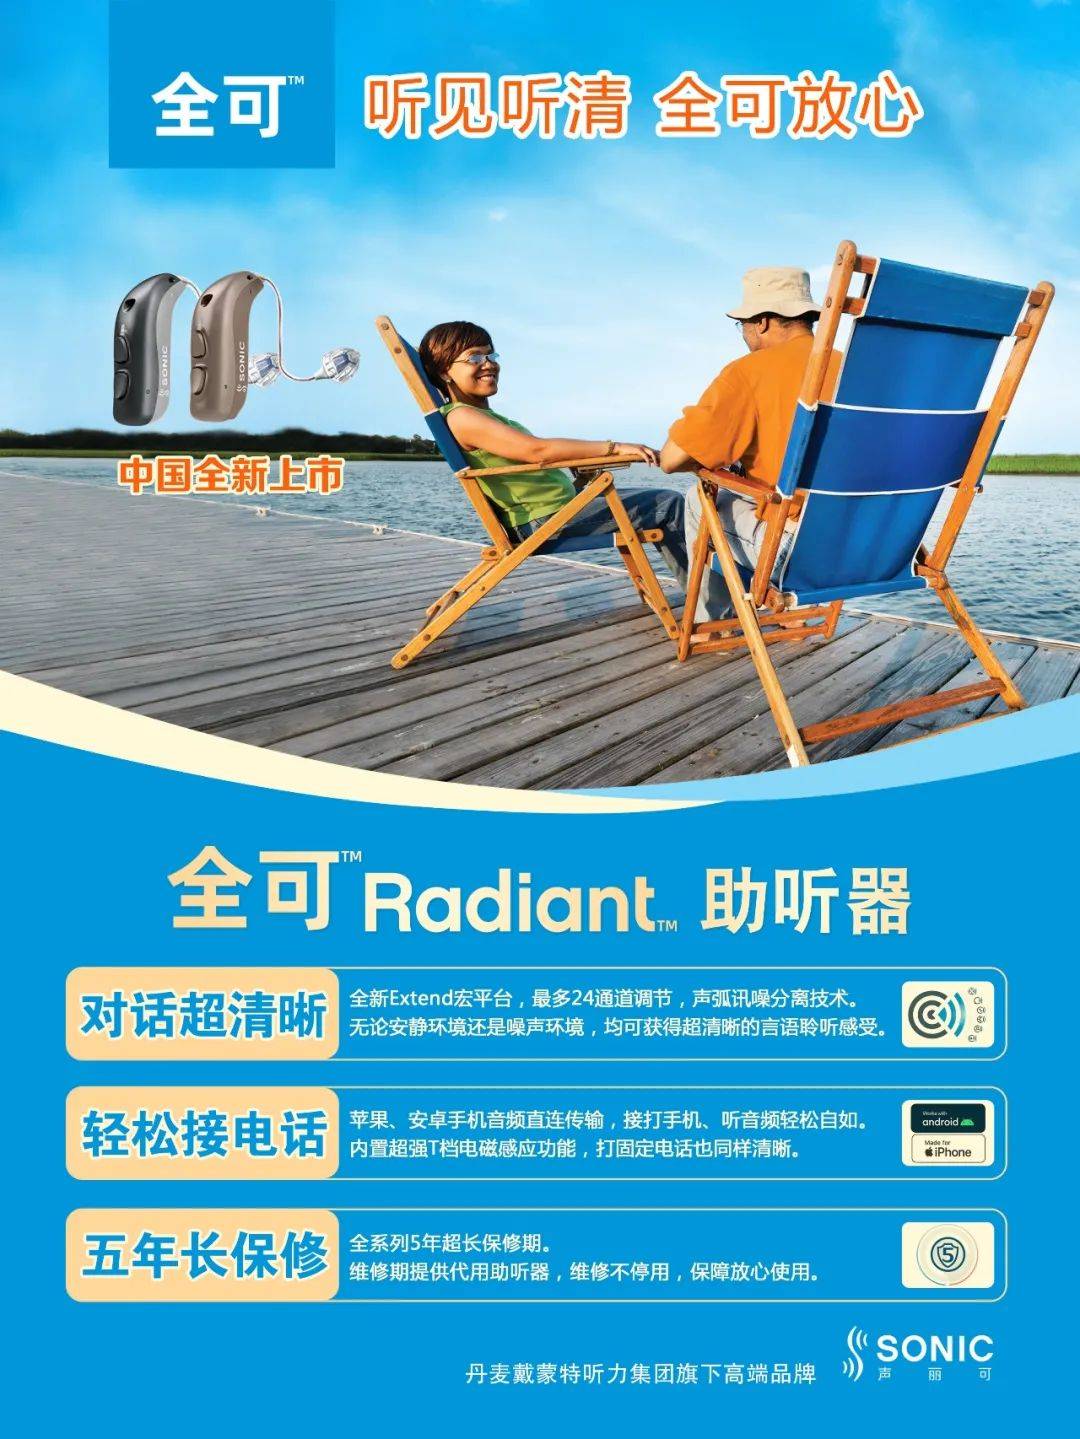 听见听清 全可放心 —— 全可 Radiant中国上市